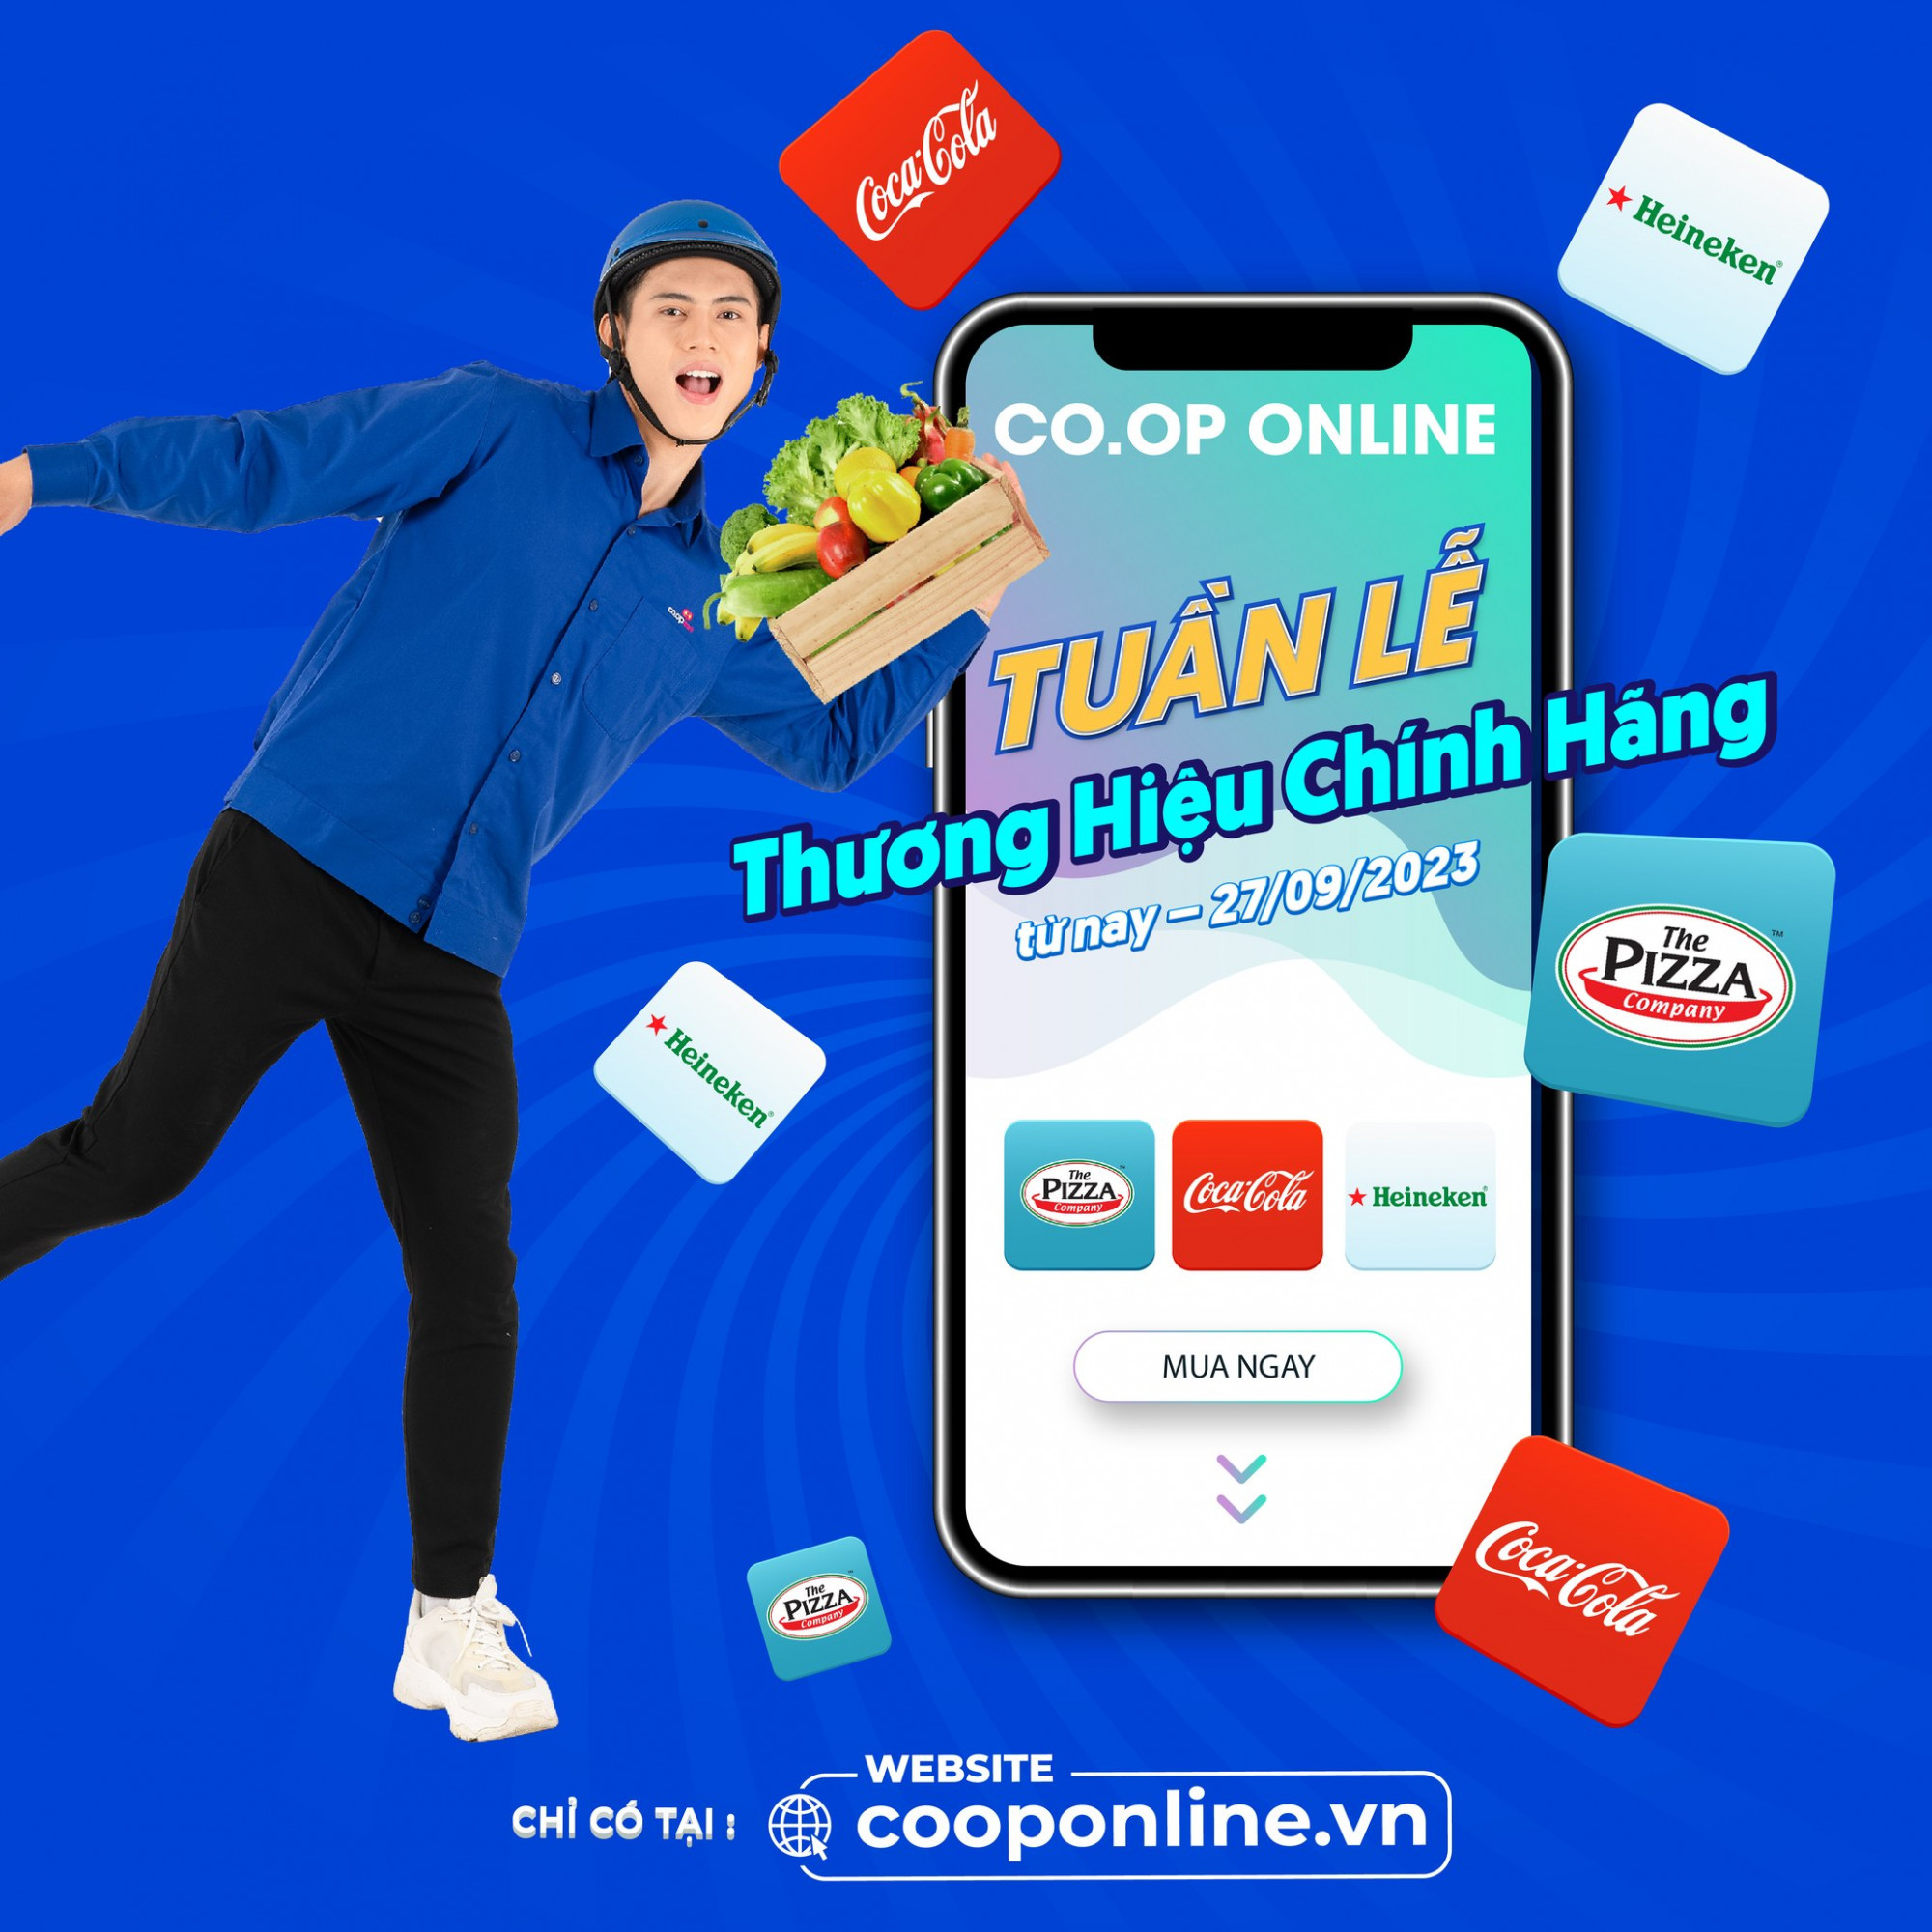 Co.opOnline tổ chức nhiều chương trình ưu đãi khách hàng - Ảnh: Quang Định